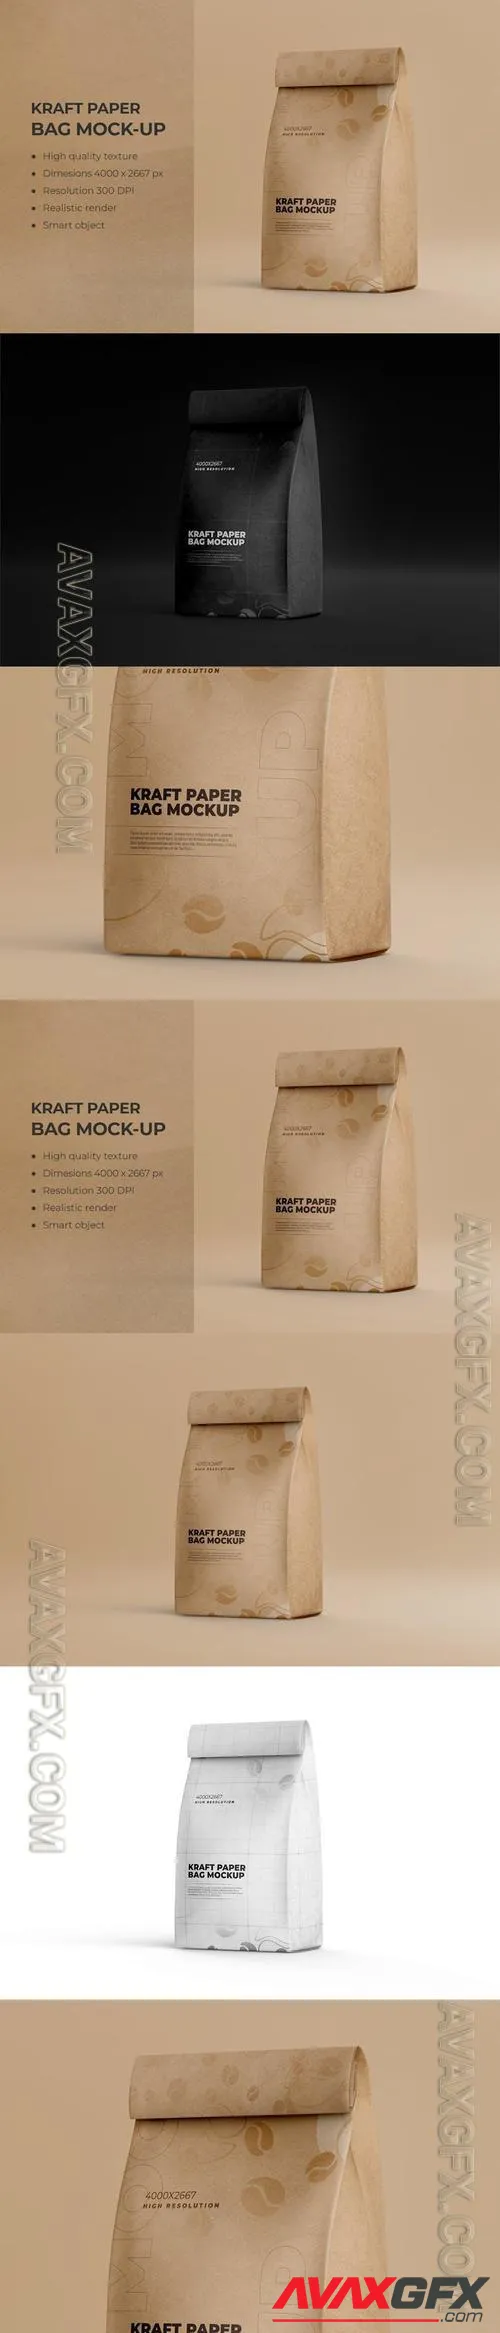 Kraft Paper Packaging Food Bag Mockup